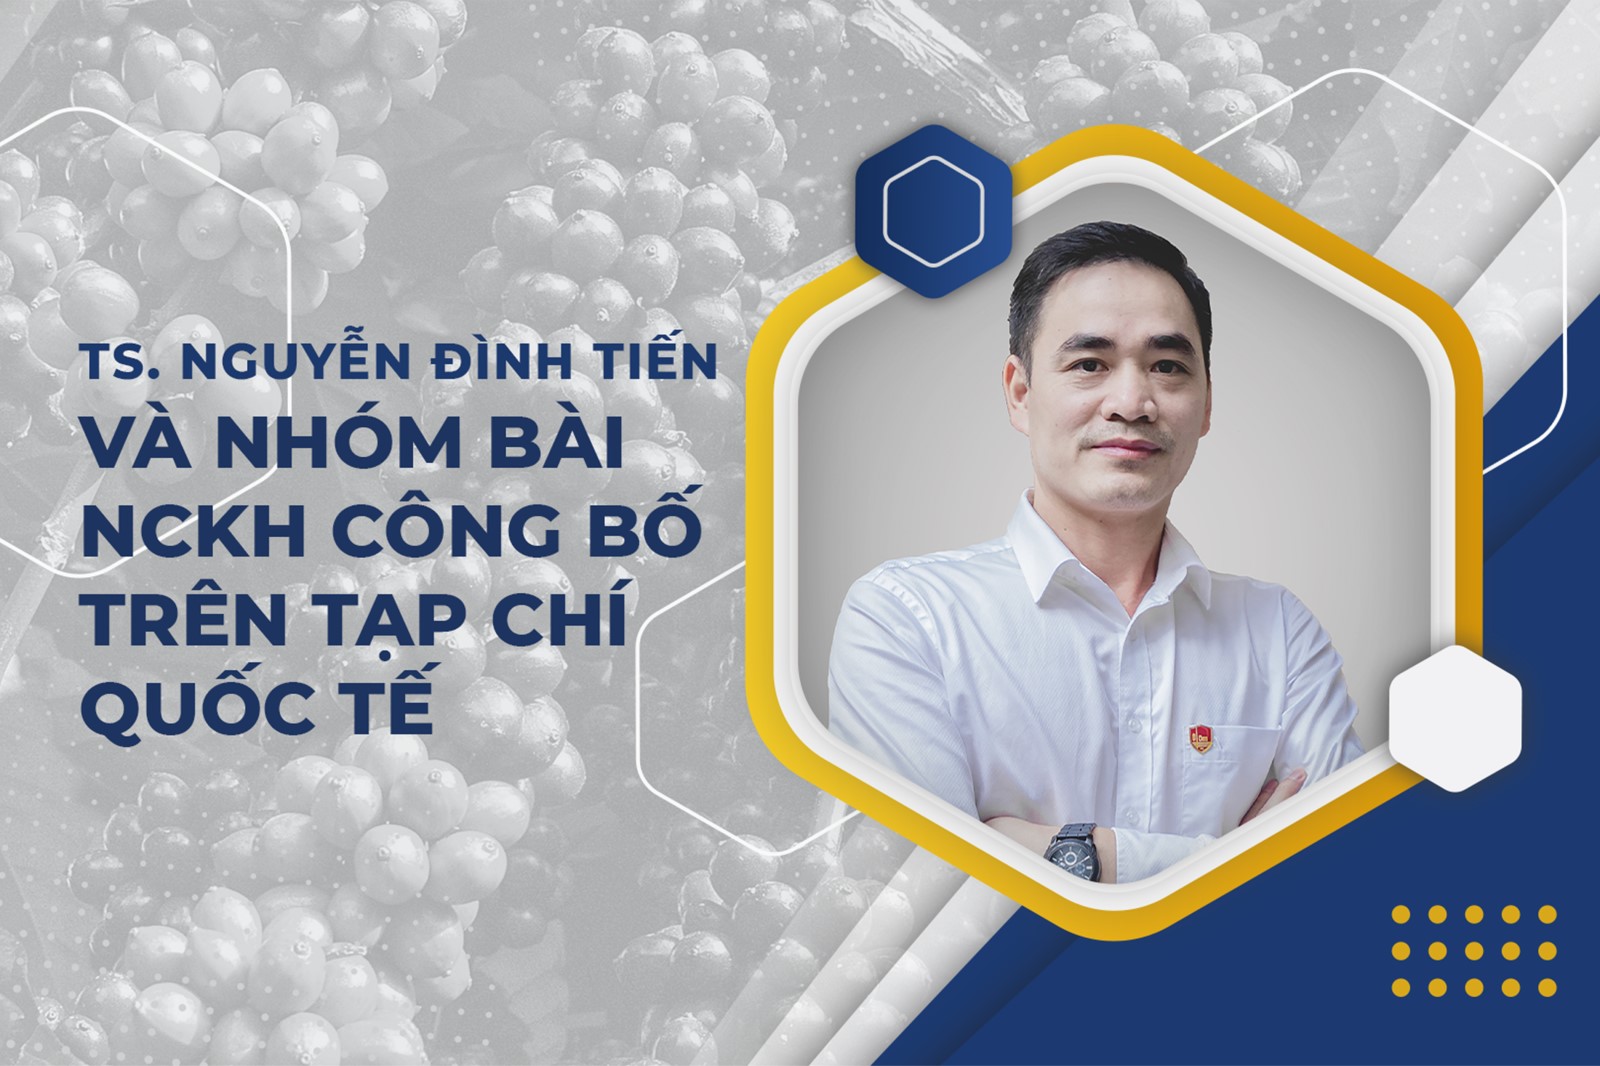 TS. Nguyễn Đình Tiến với các công bố quốc tế hướng tới nâng cao hiệu quả sử dụng nước tưới trong sản xuất cà phê tại tỉnh Lâm Đồng, Việt Nam 